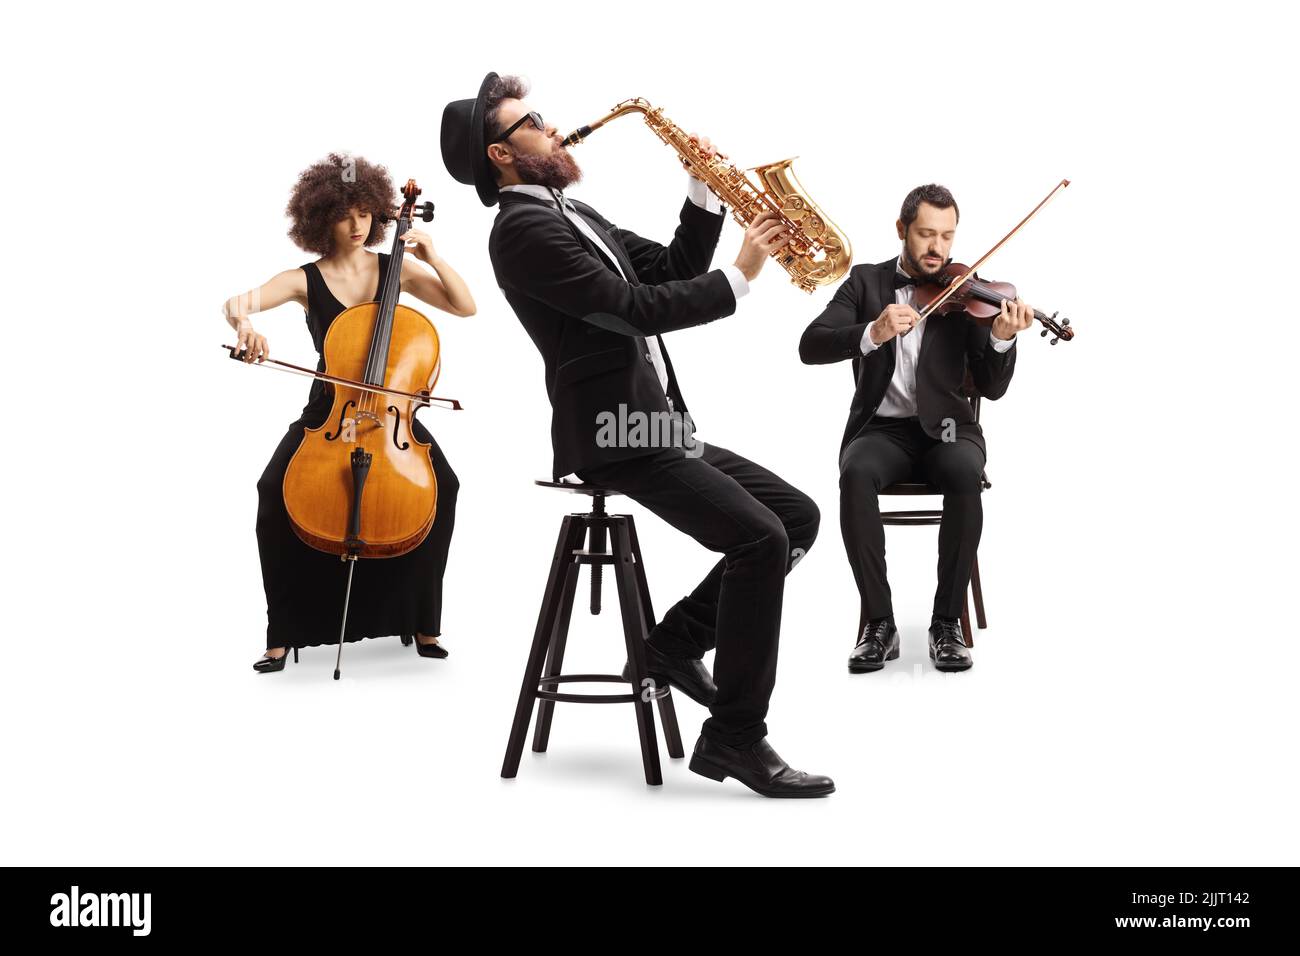 Orquesta musical con violonchelo, saxofón y violín aislados sobre fondo blanco Foto de stock